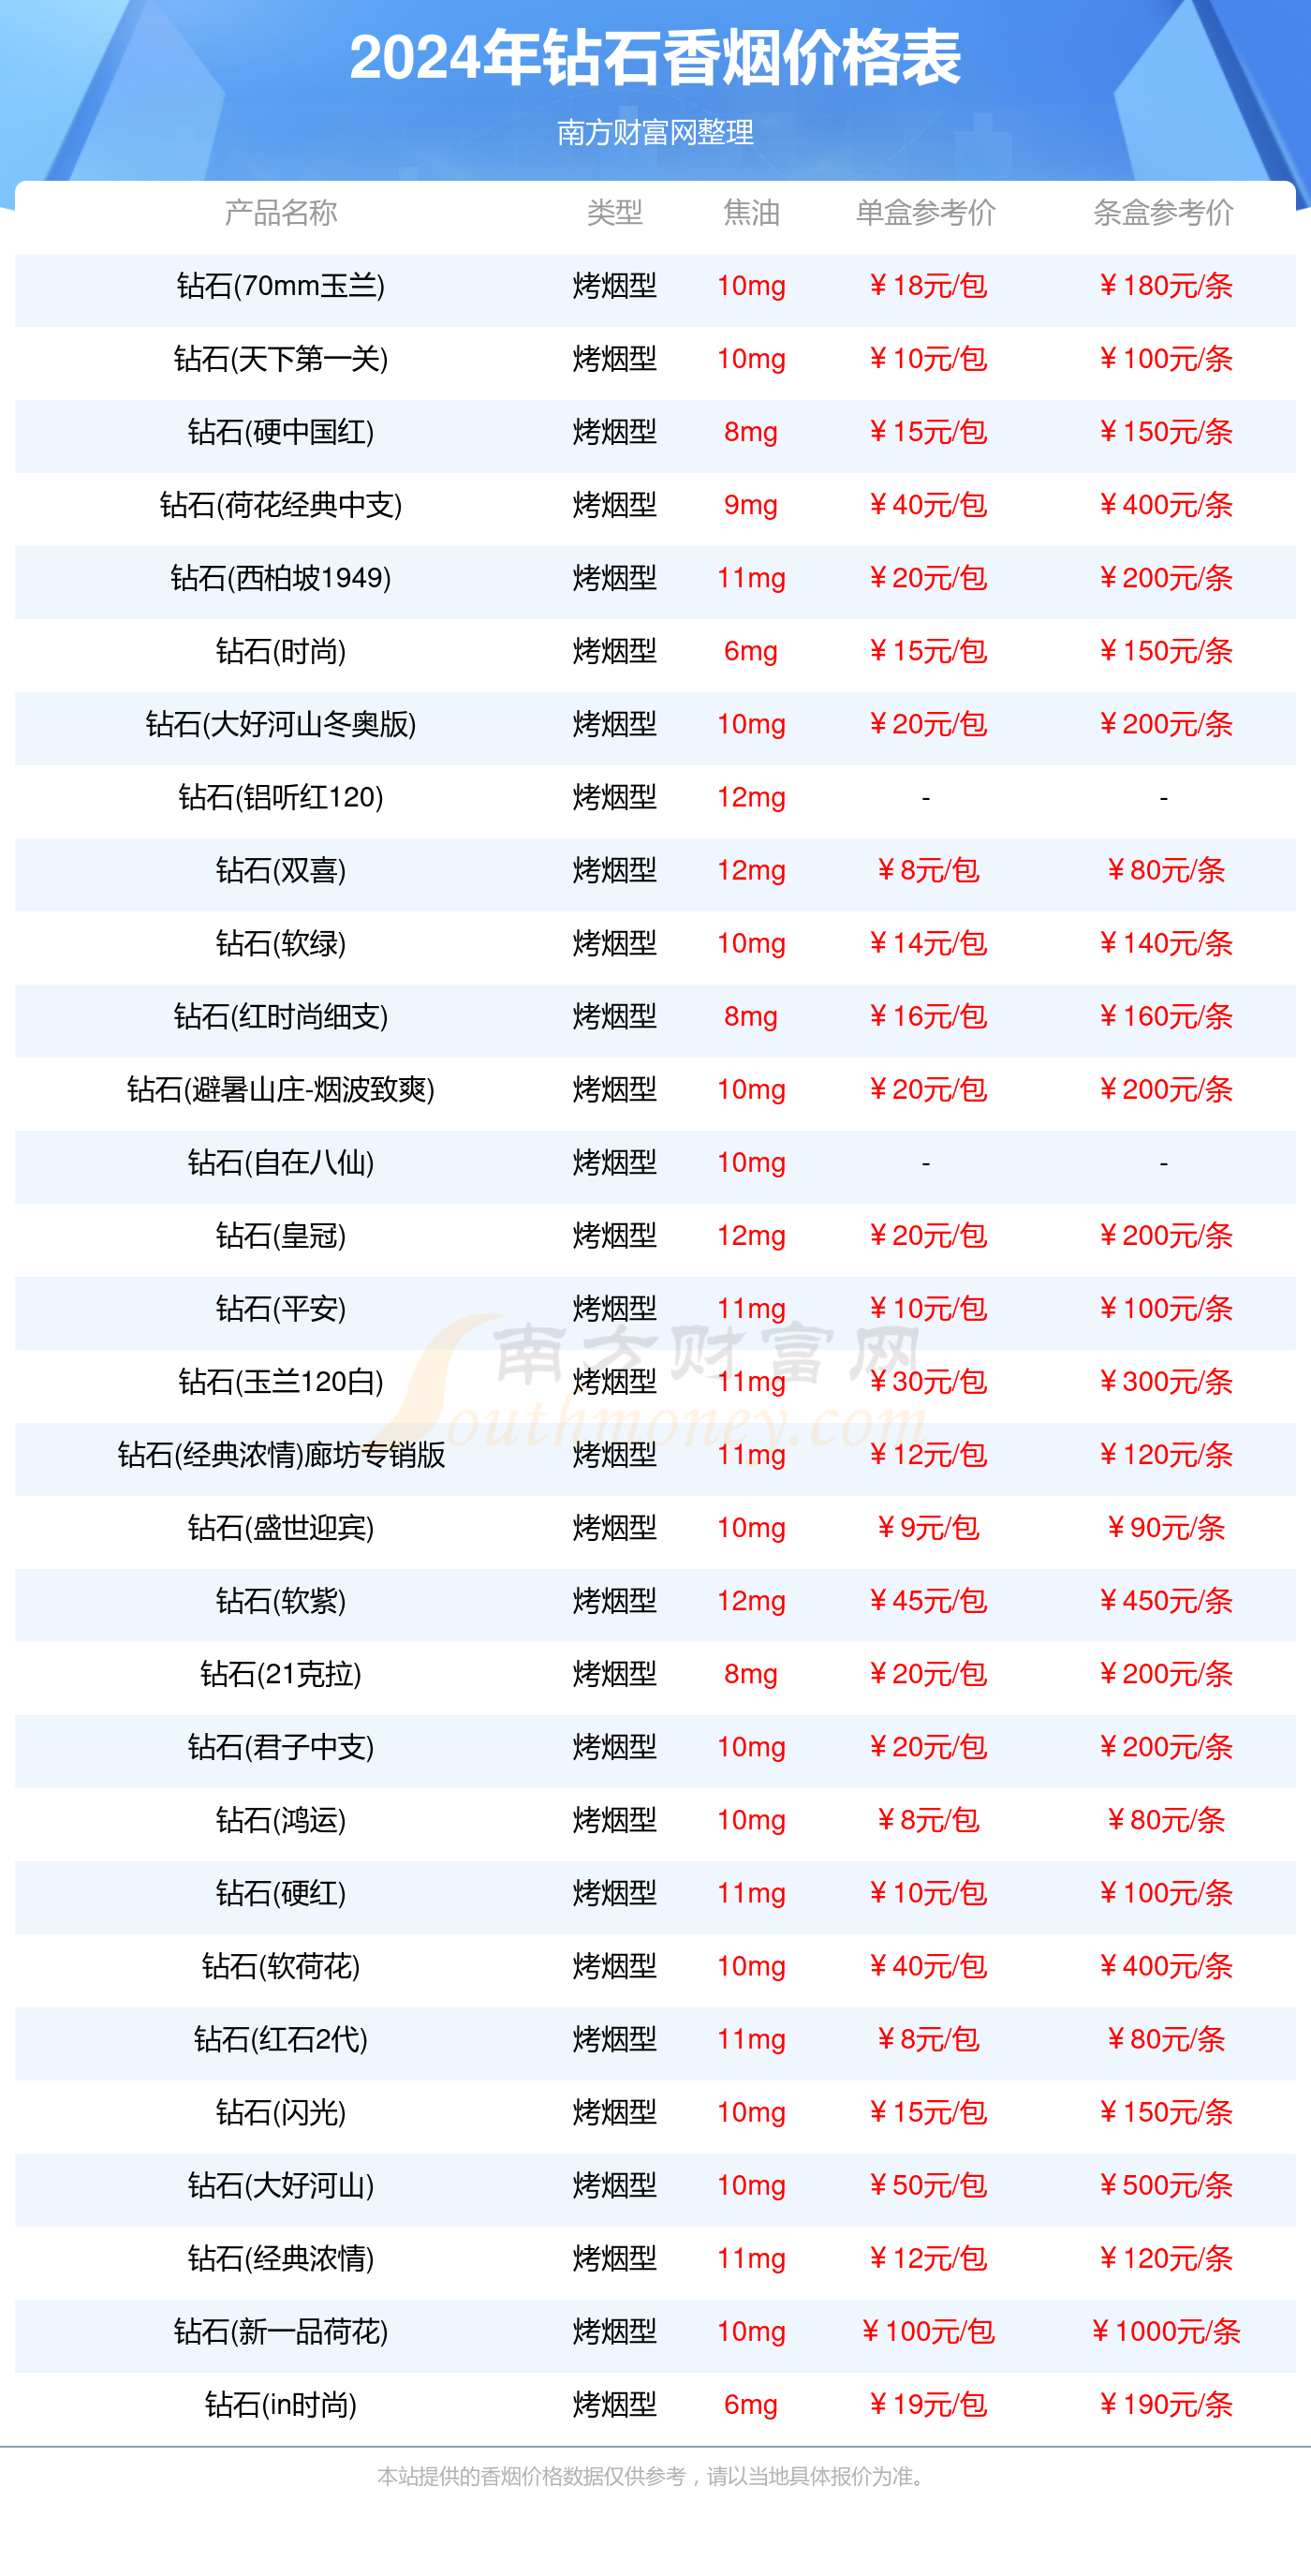 2020年中国钻石价目表图片